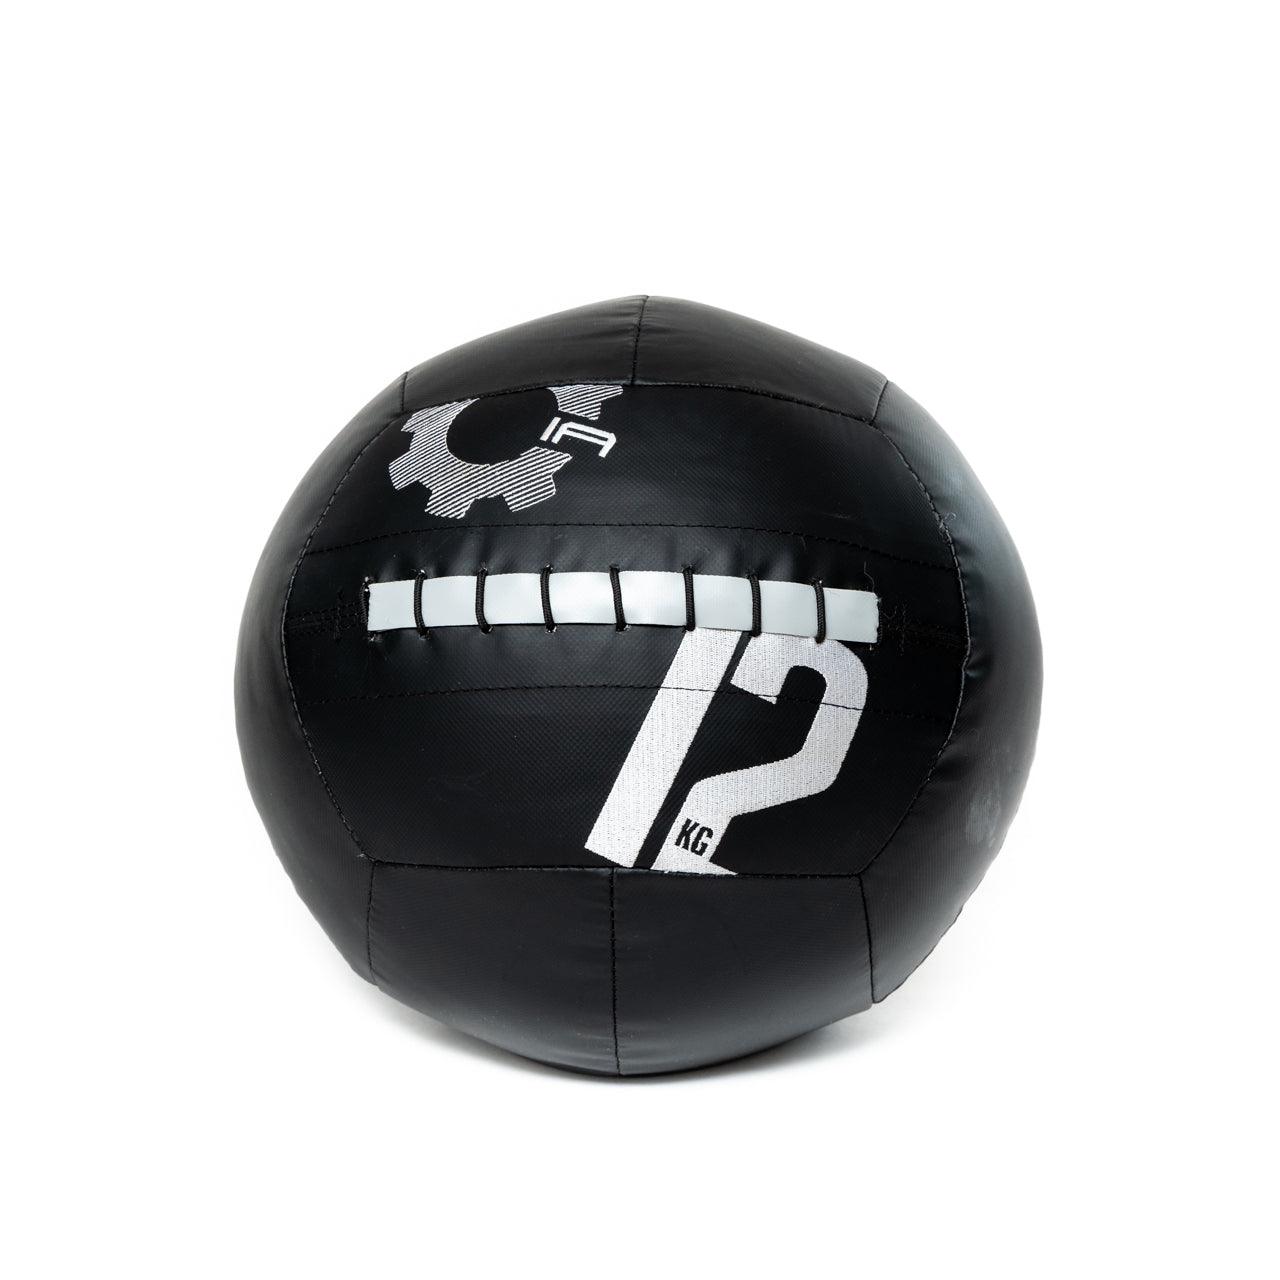 12kg Medicine Ball V3.0 5pack - Industrial Athletic